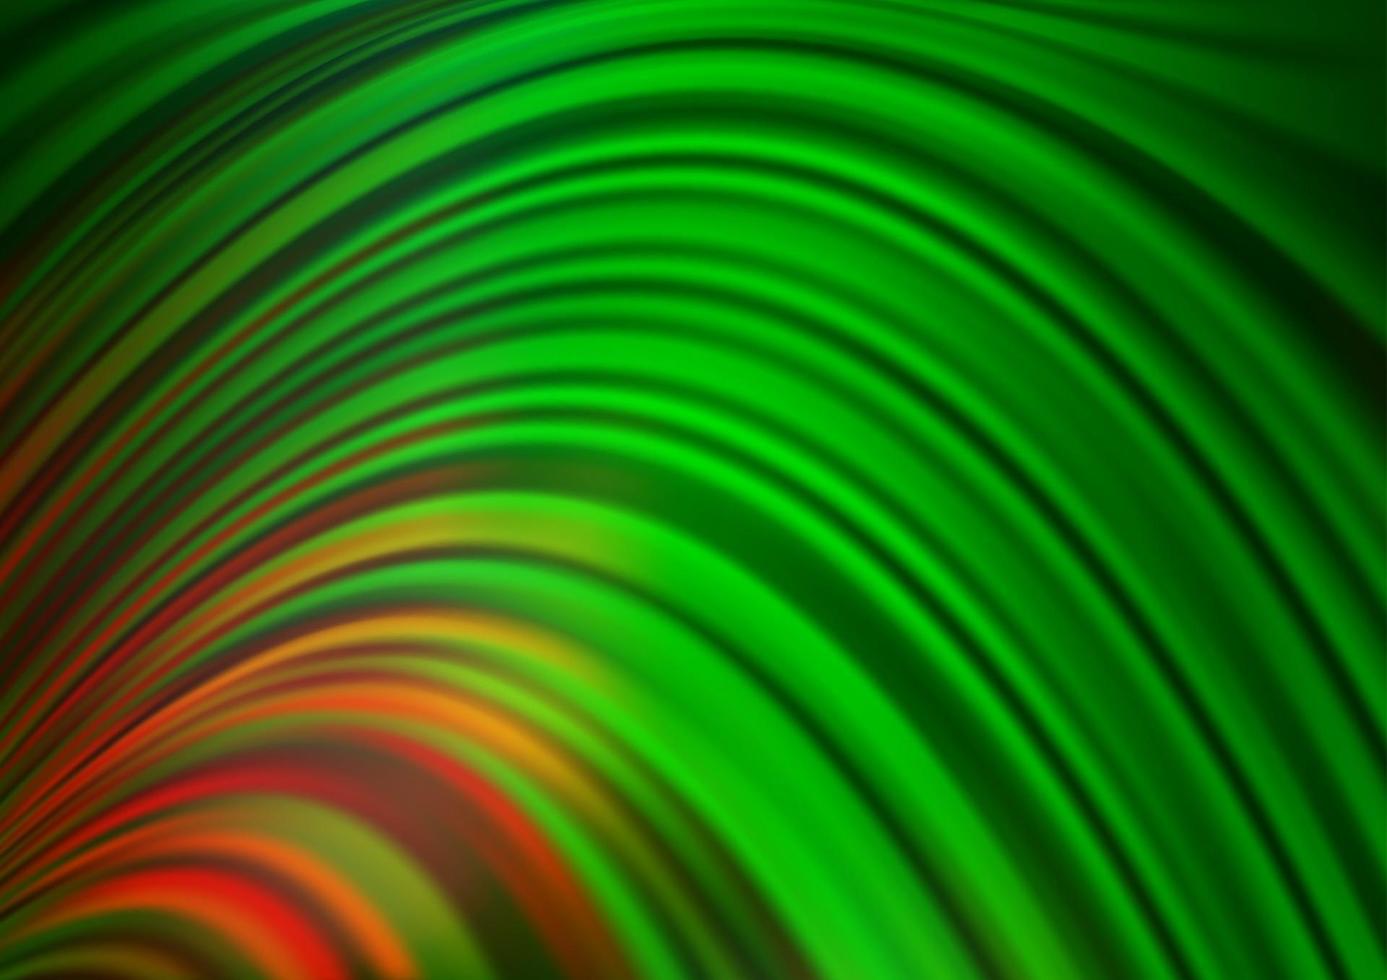 ljusgrön, röd vektorbakgrund med böjda cirklar. vektor